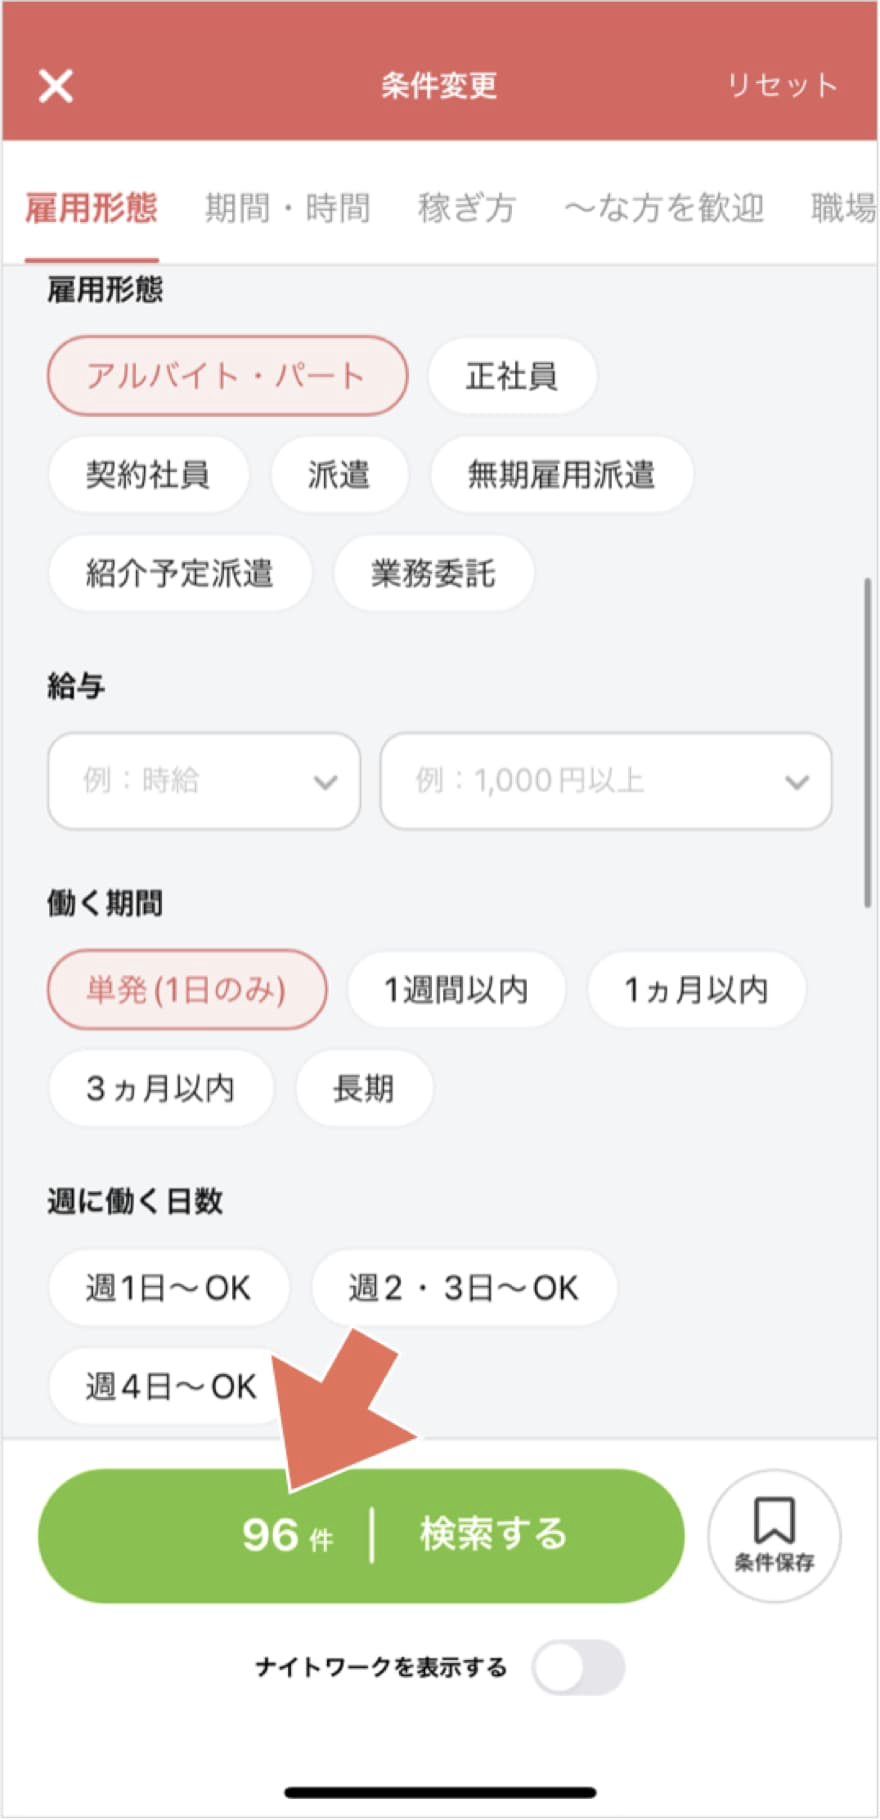 香川の単発バイトが見つかるスキマバイトアプリ